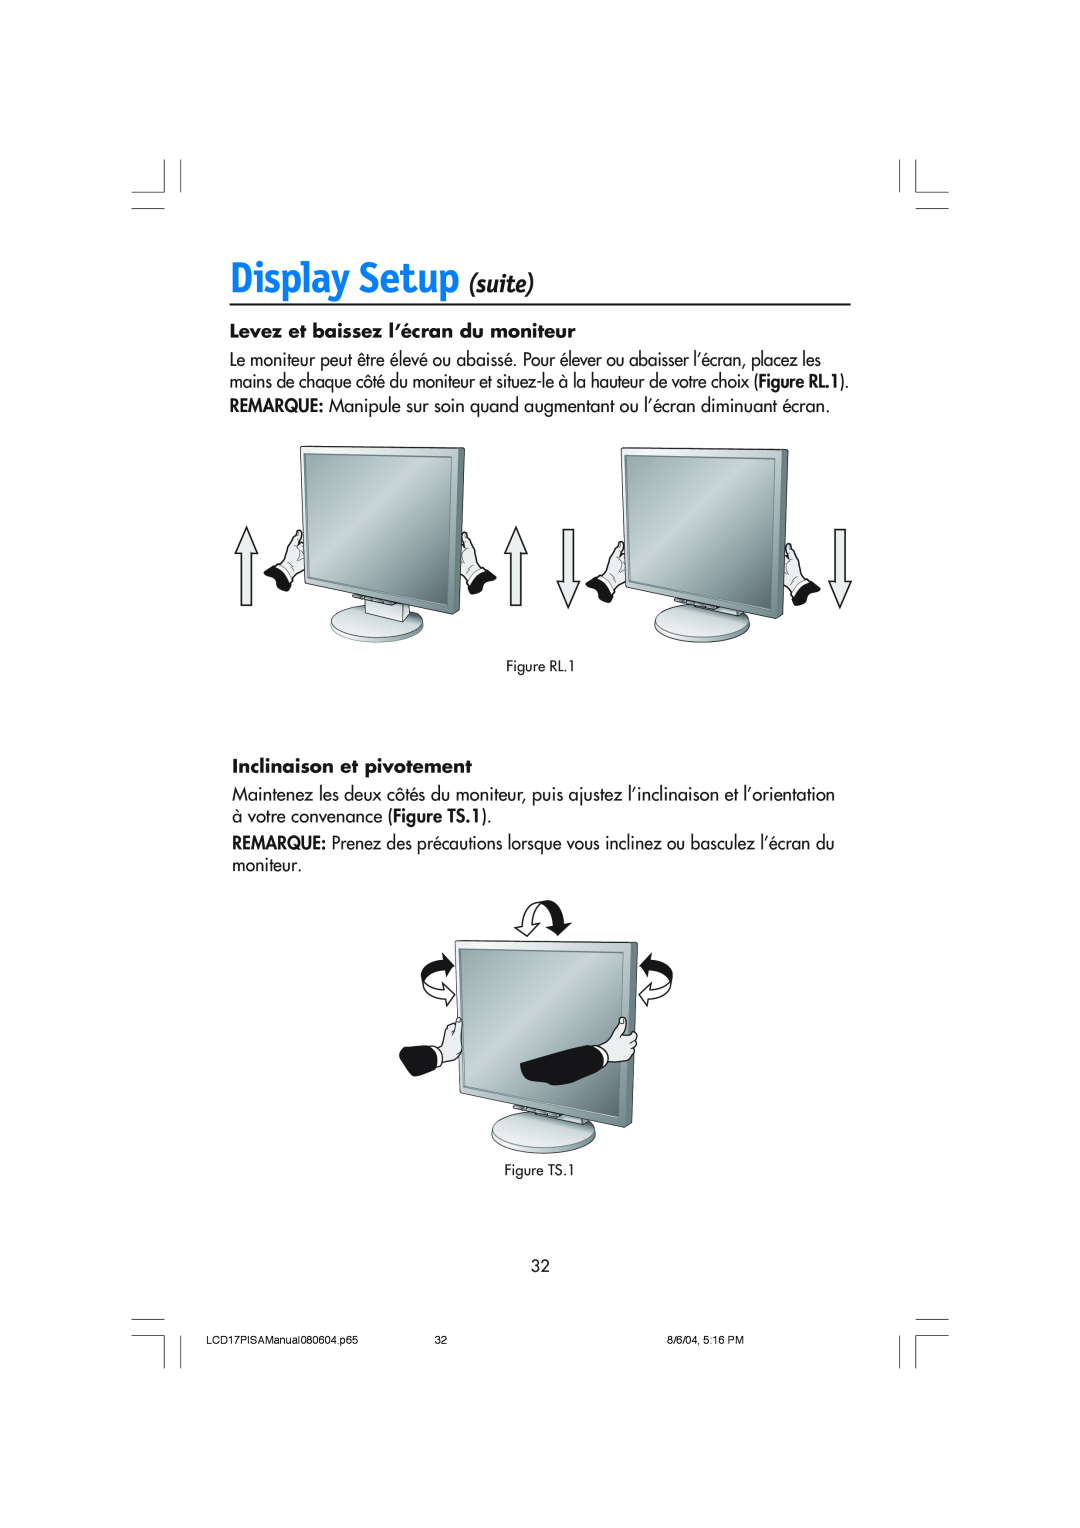 NEC LCD1770V user manual Levez et baissez l’écran du moniteur, Inclinaison et pivotement, Display Setup suite 